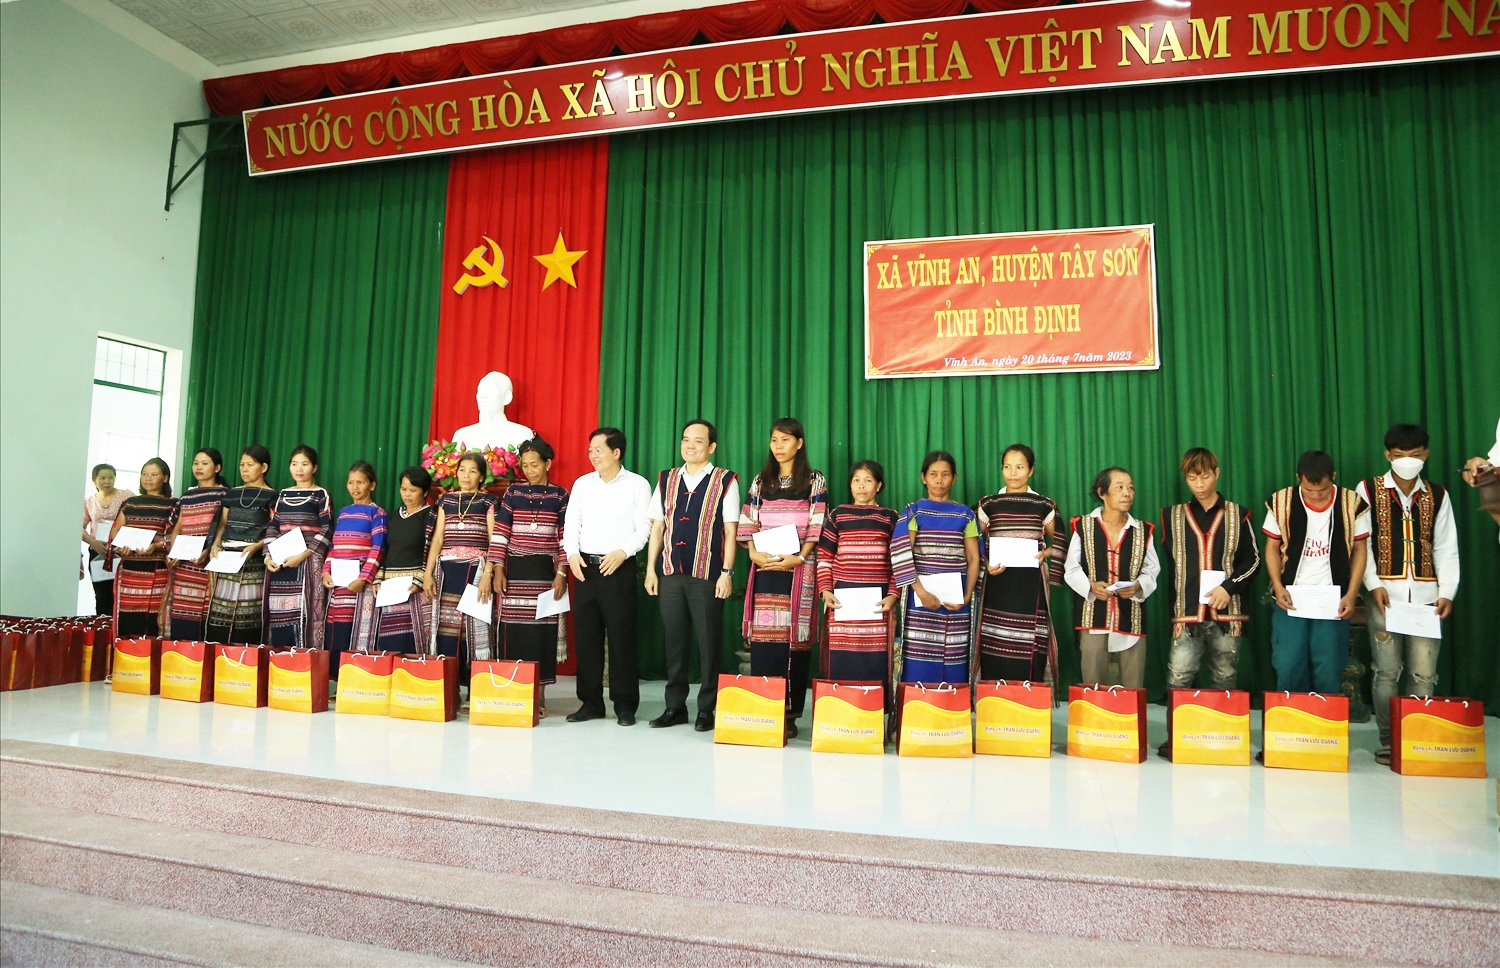 Phó Thủ tướng Trần Lưu Quang tặng quà cho bà con xã Vĩnh An